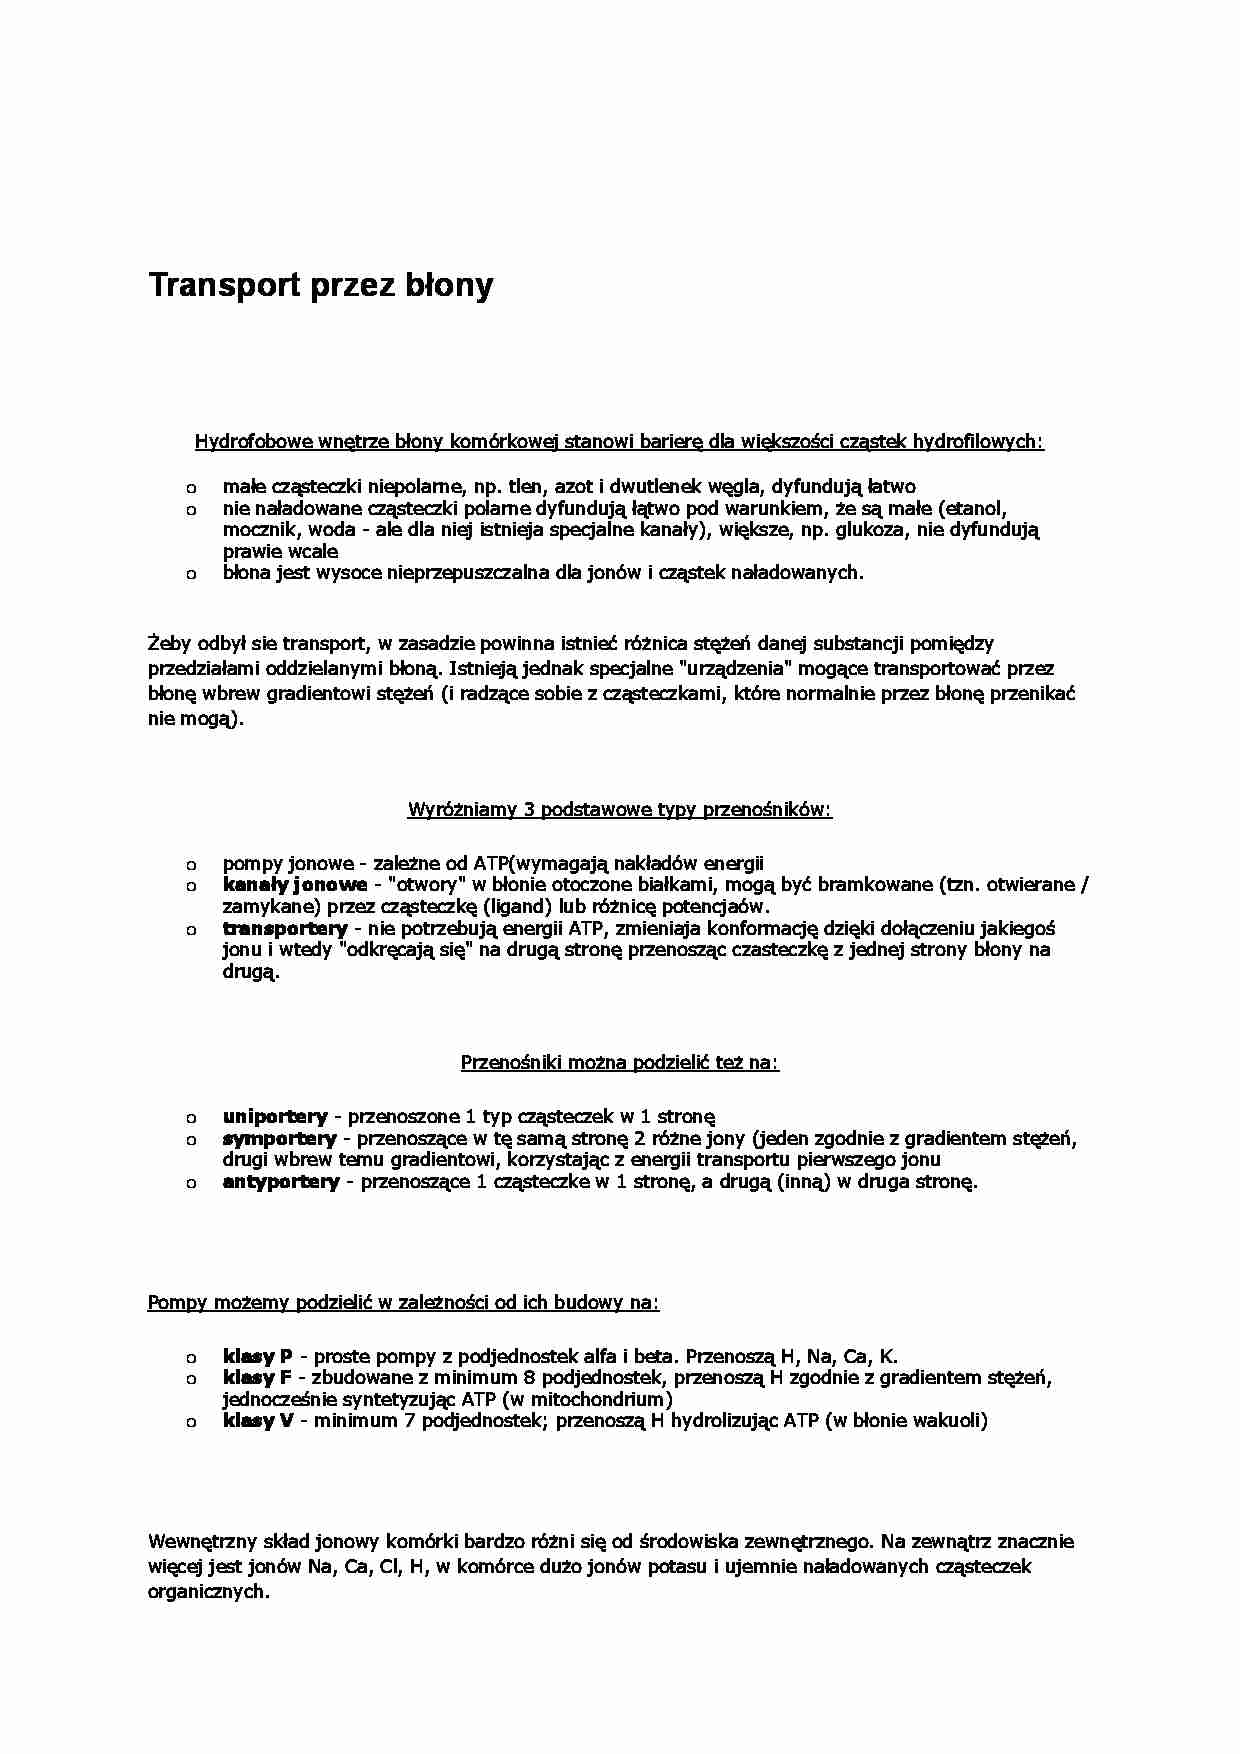 Transport przez błony - wykład - strona 1